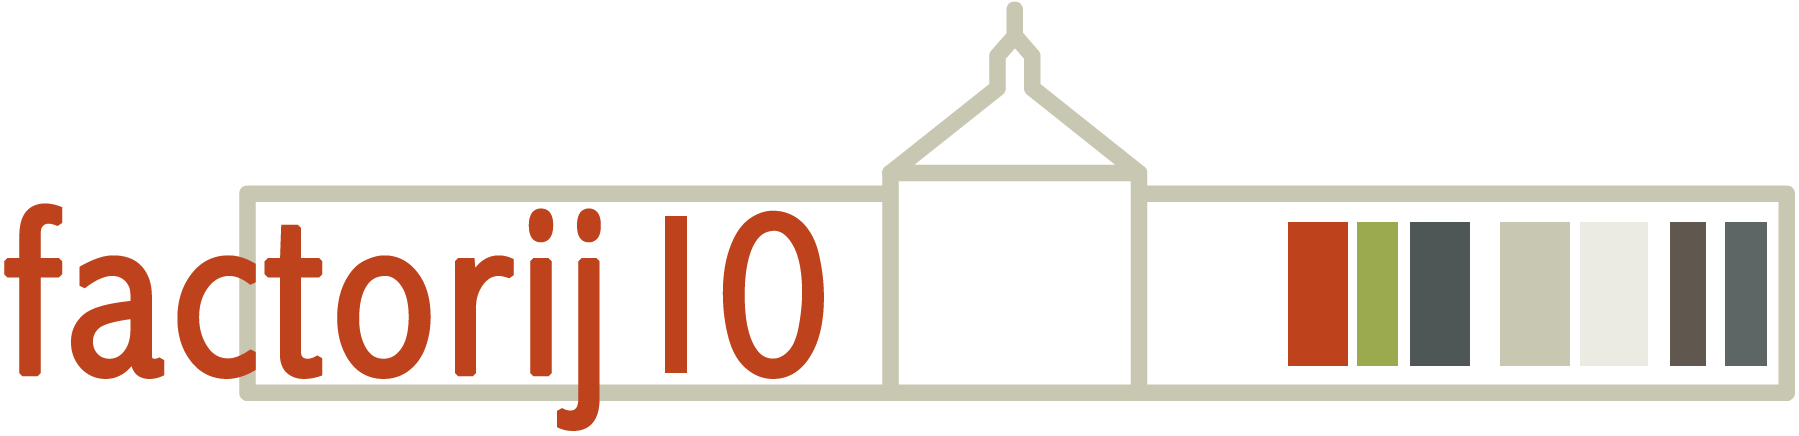 Logo - Factorij10